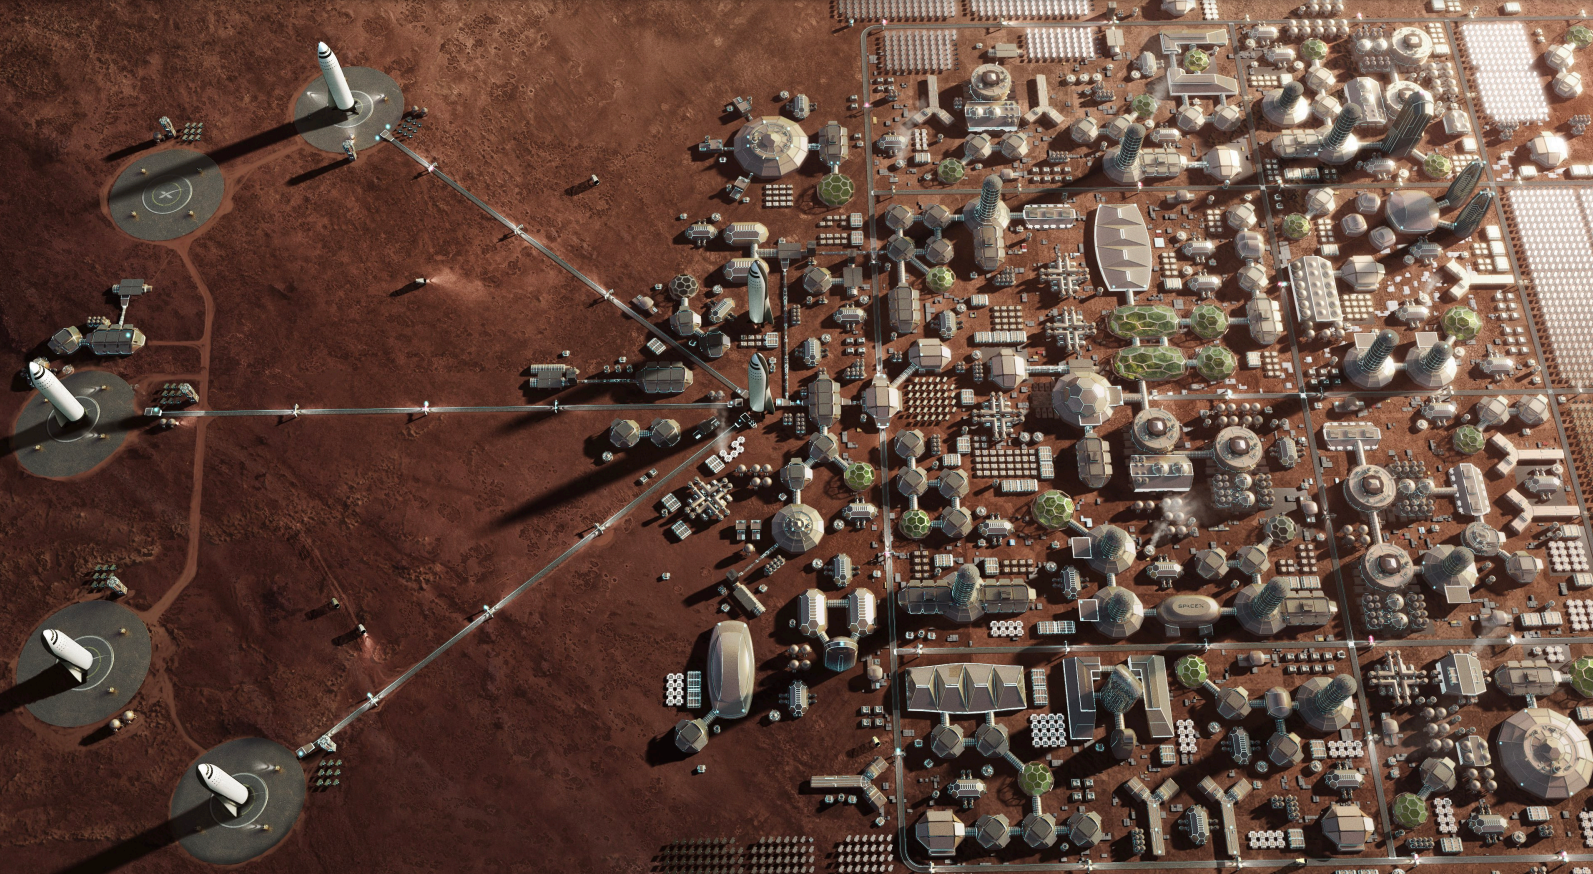 스페이스X가 꿈꾸는 화성 거주 공동체의 모습 (사진 출처: 스페이스X)